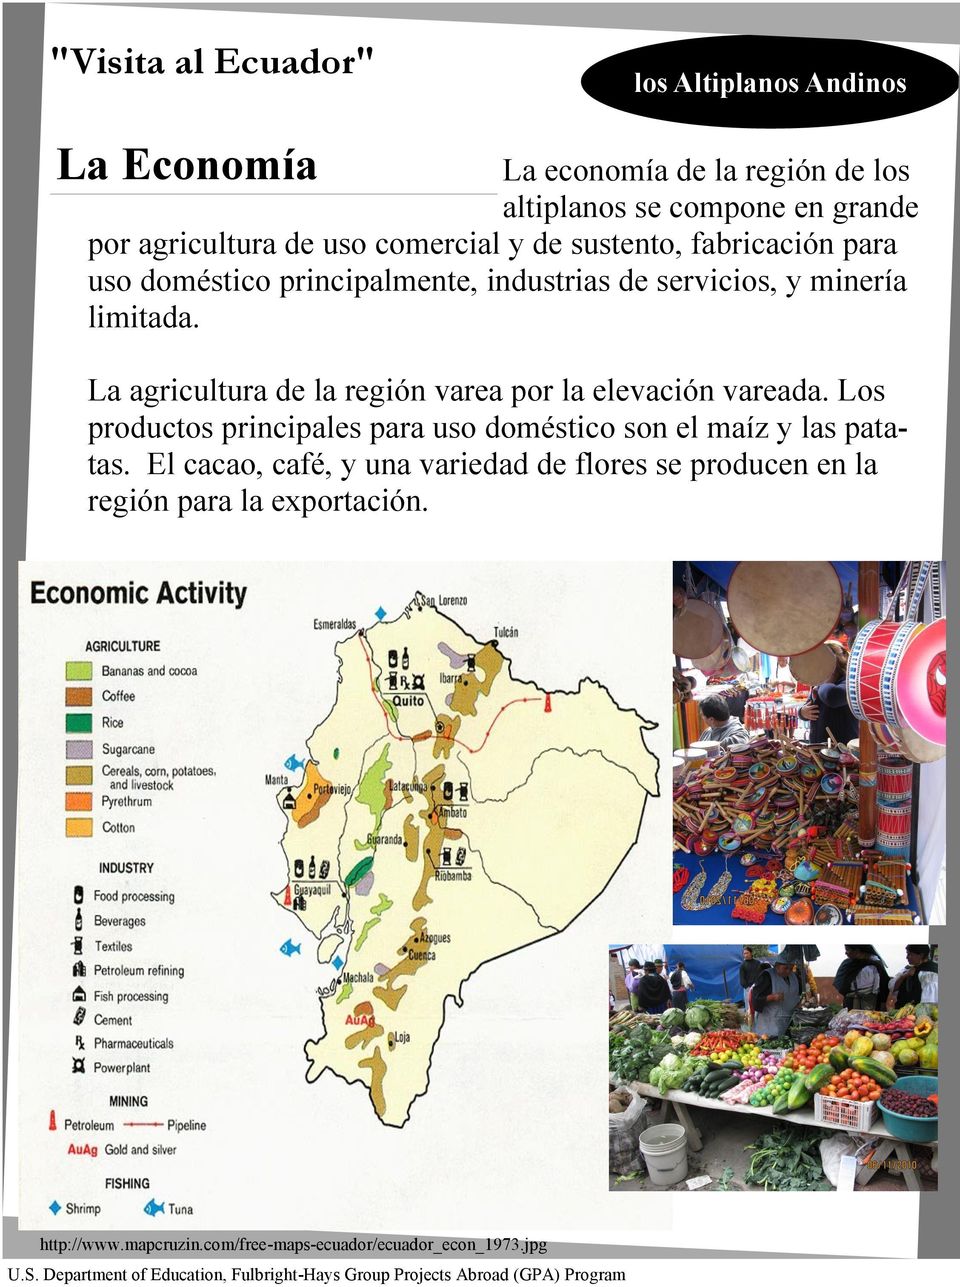 La agricultura de la región varea por la elevación vareada. Los productos principales para uso doméstico son el maíz y las patatas.